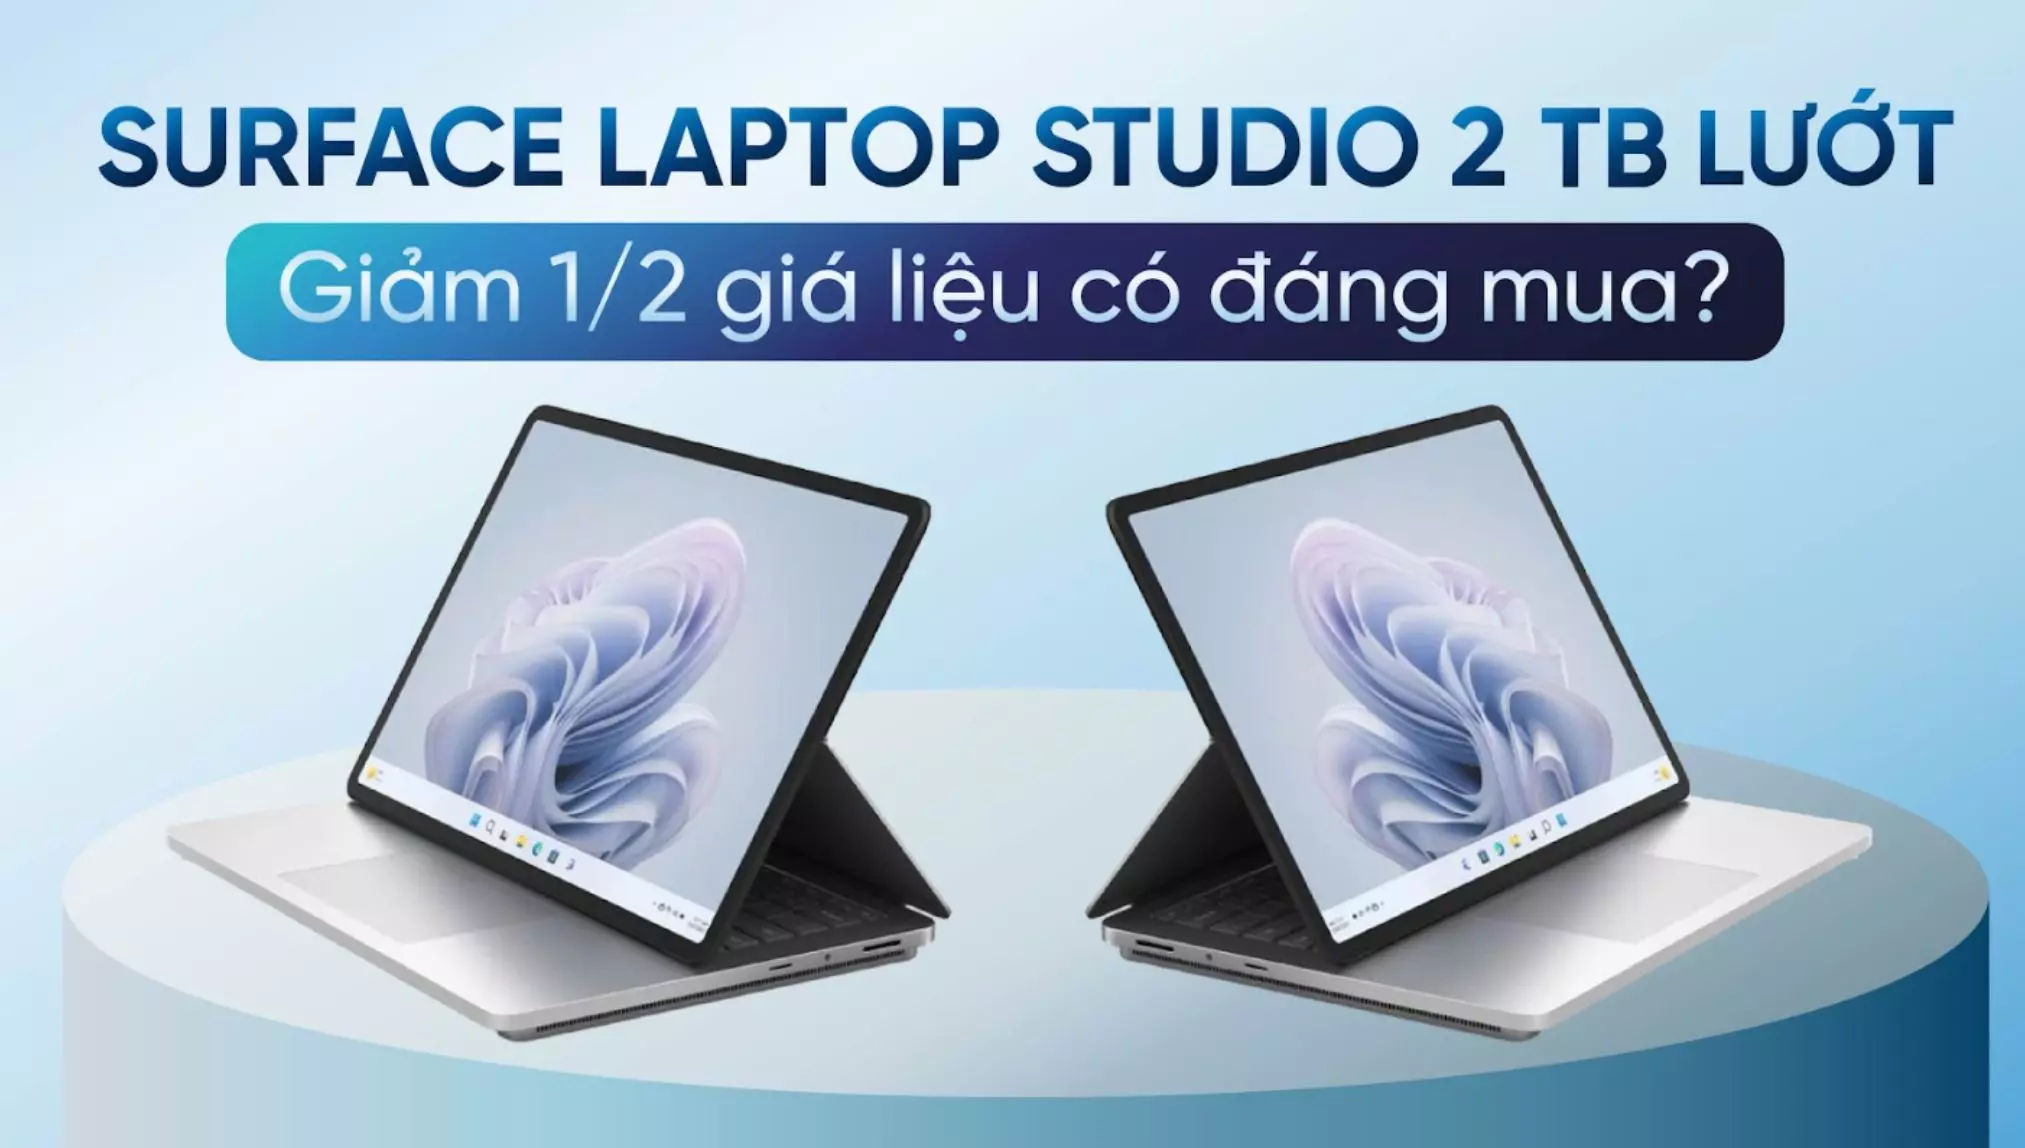 Surface Laptop Studio 2TB lướt còn 1/2 giá liệu có đáng mua?